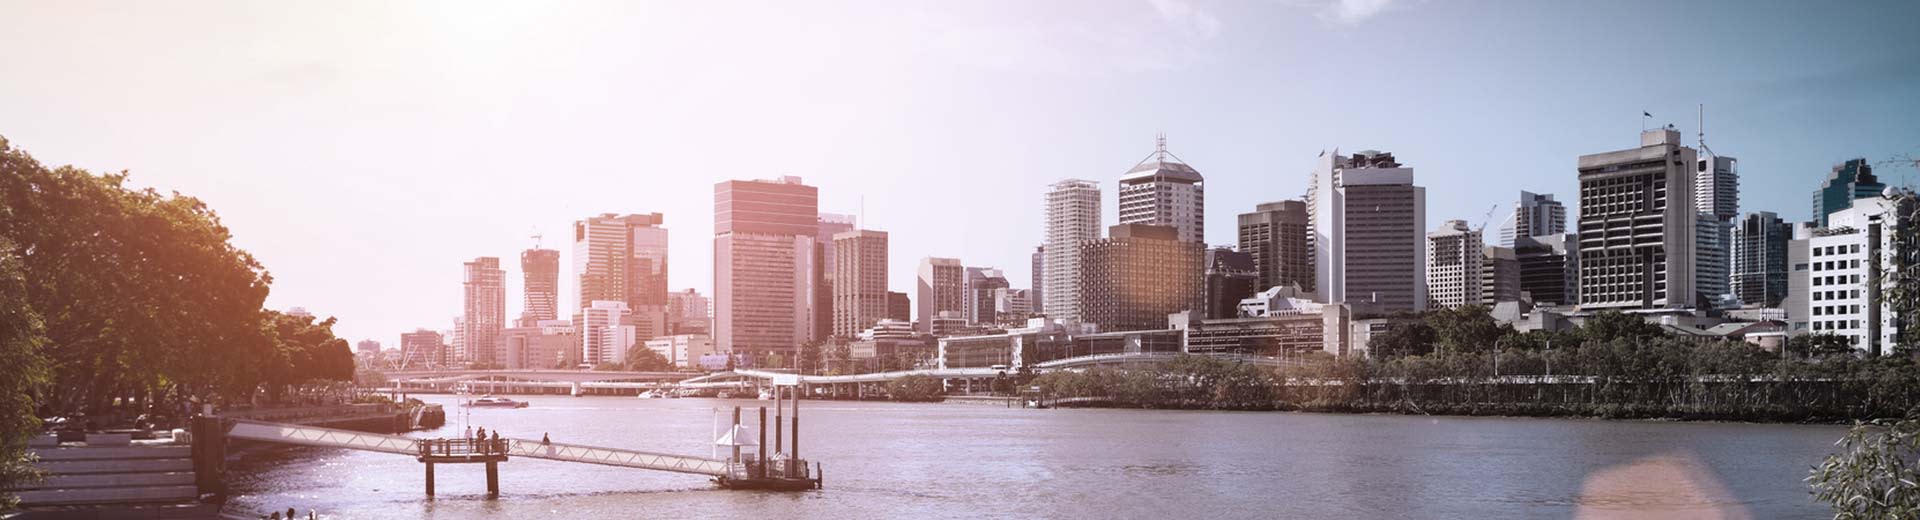 Distrito comercial de Brisbane a la derecha, con árboles a la izquierda. Sunny Sky y la imagen se toma desde el río Brisbane.